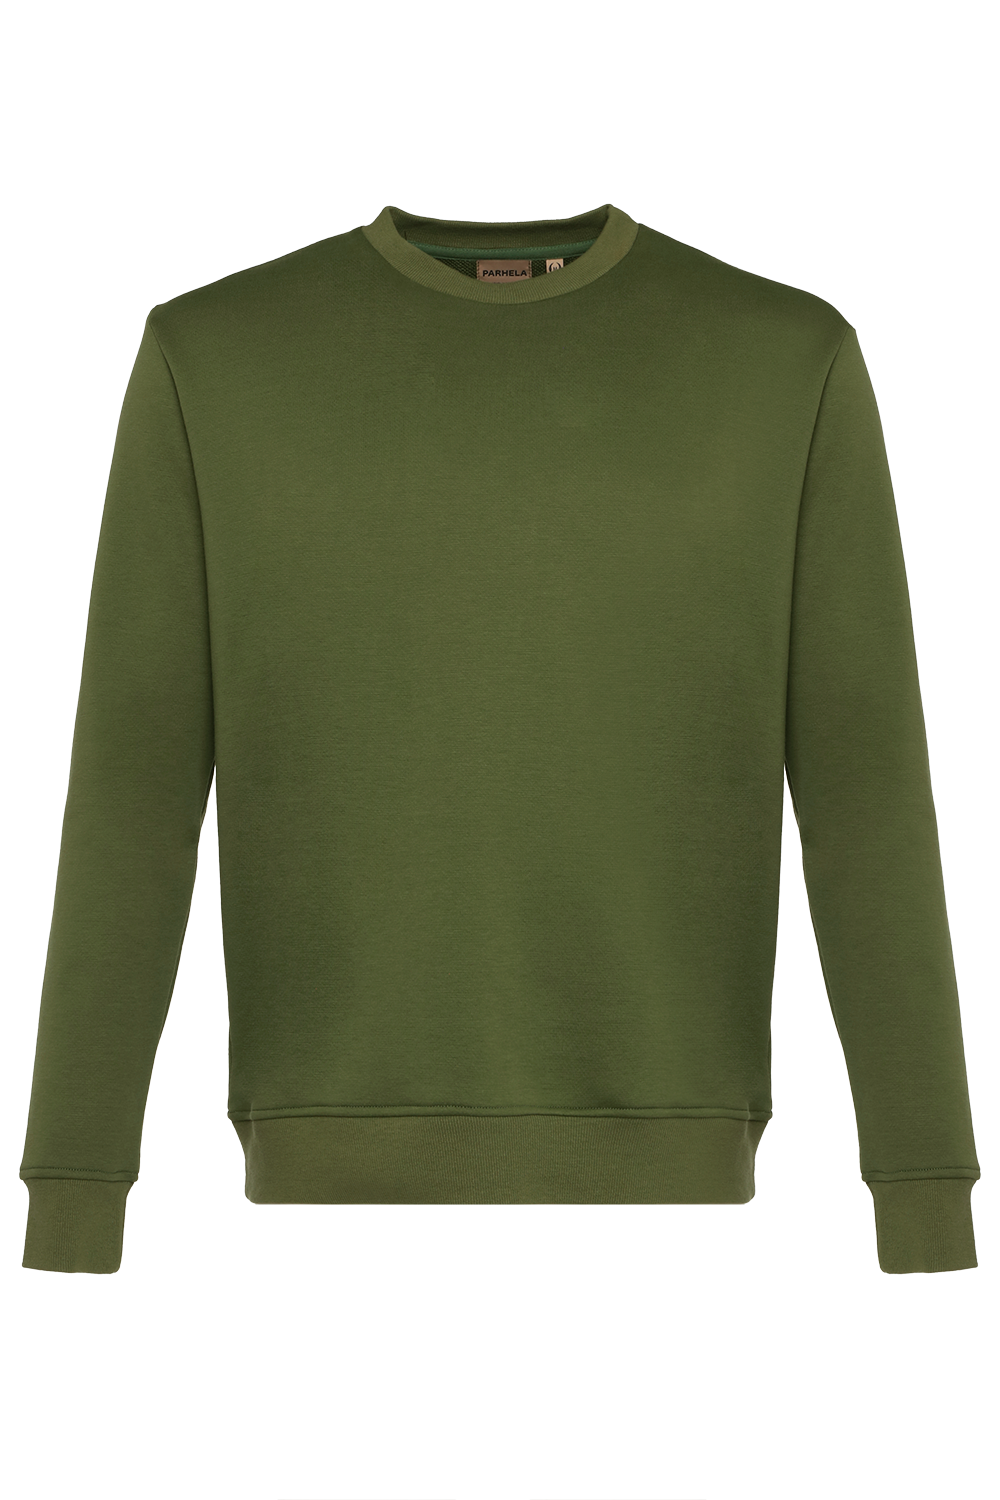 The Staple Sweatshirt